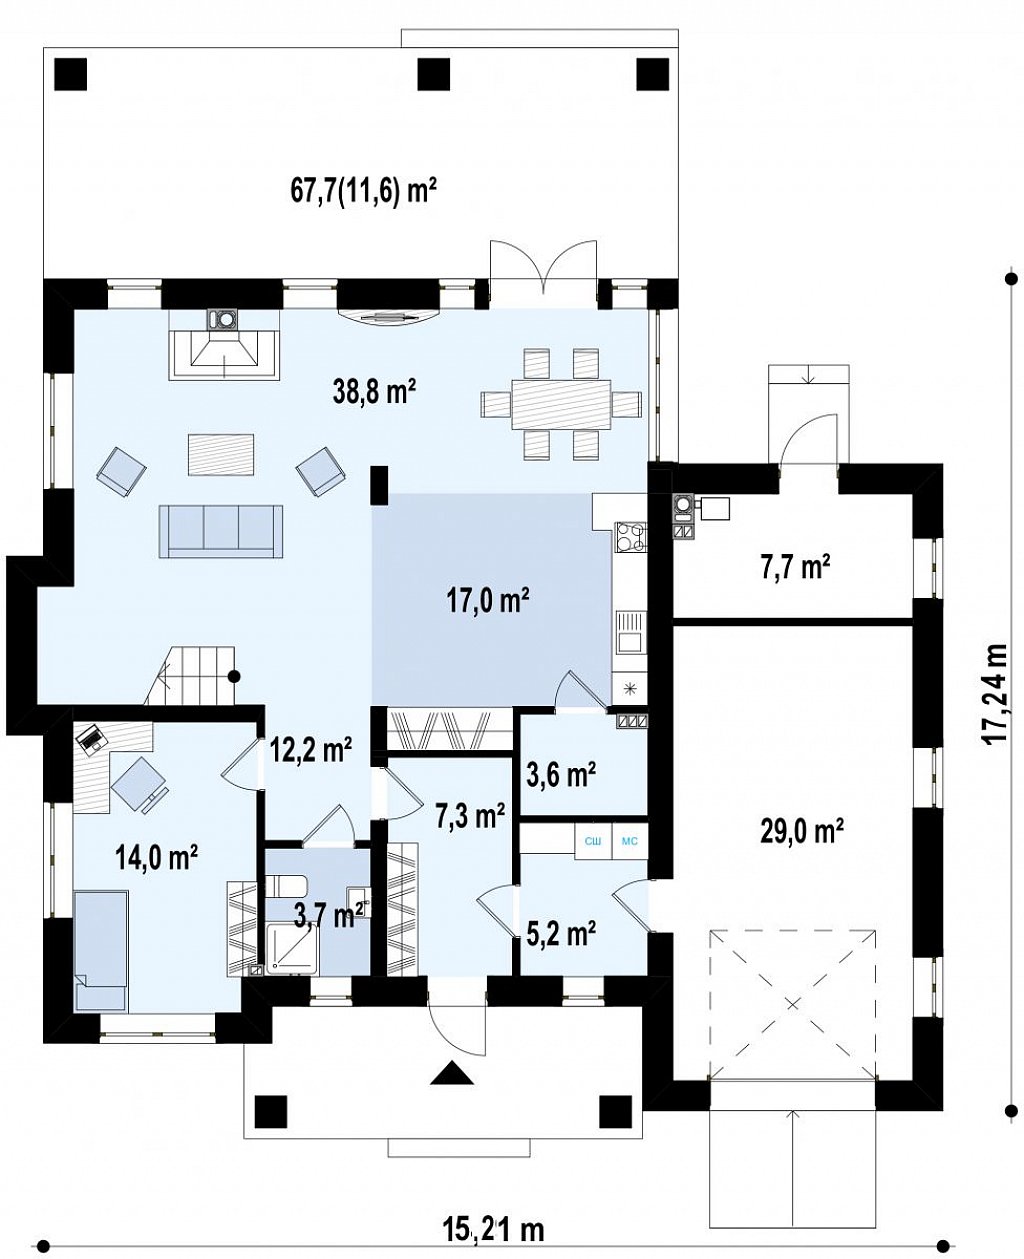 Элегантный двухэтажный дом с гаражом, с 5 спальнями план помещений 1